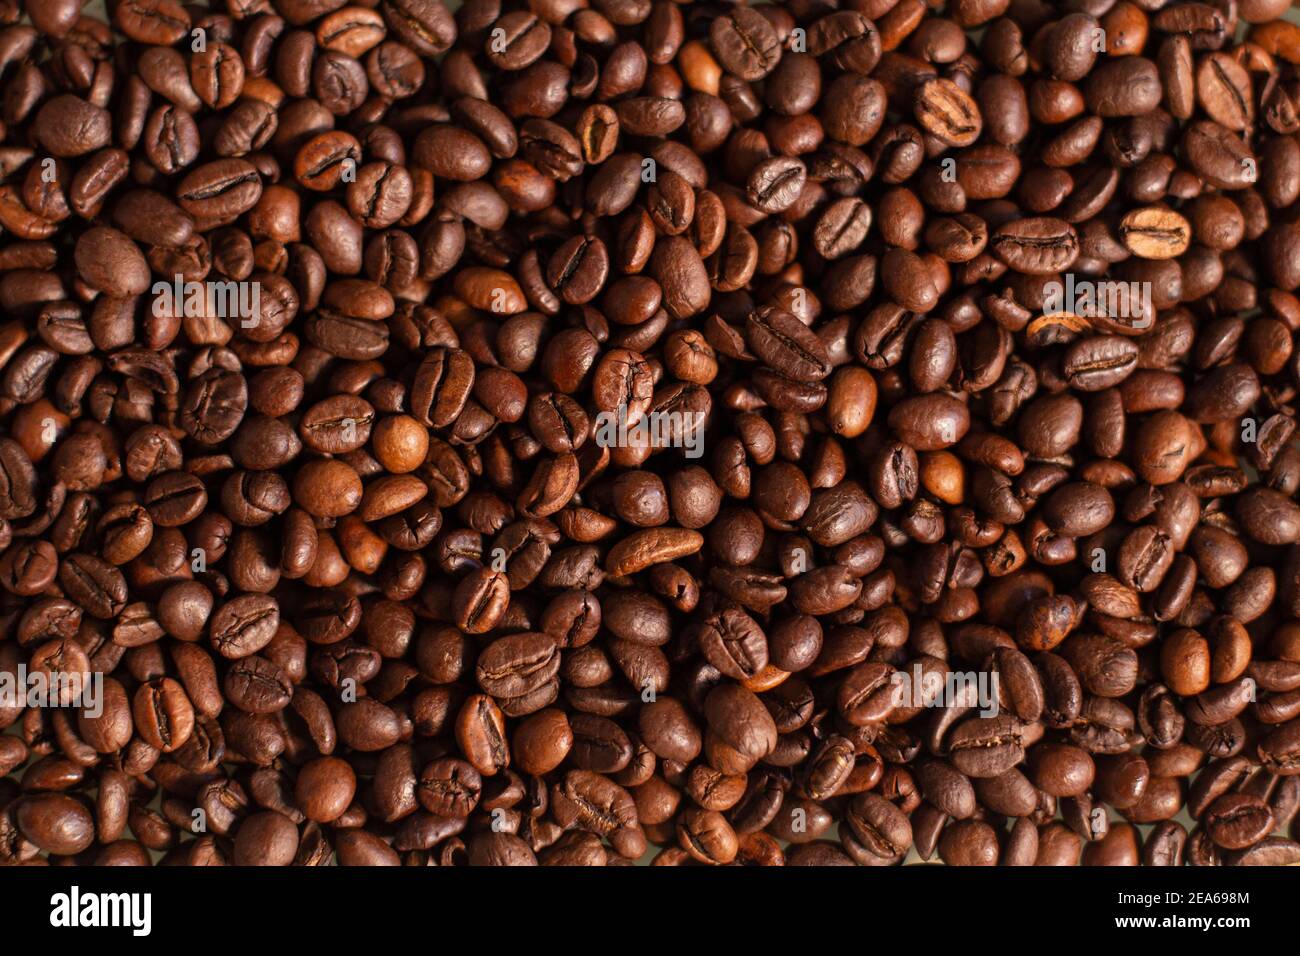 Tapete mit frischen Kaffeesorten. Hintergrund der gerösteten Kaffeebohnen. Guten Morgen. Café-Bar. Stockfoto